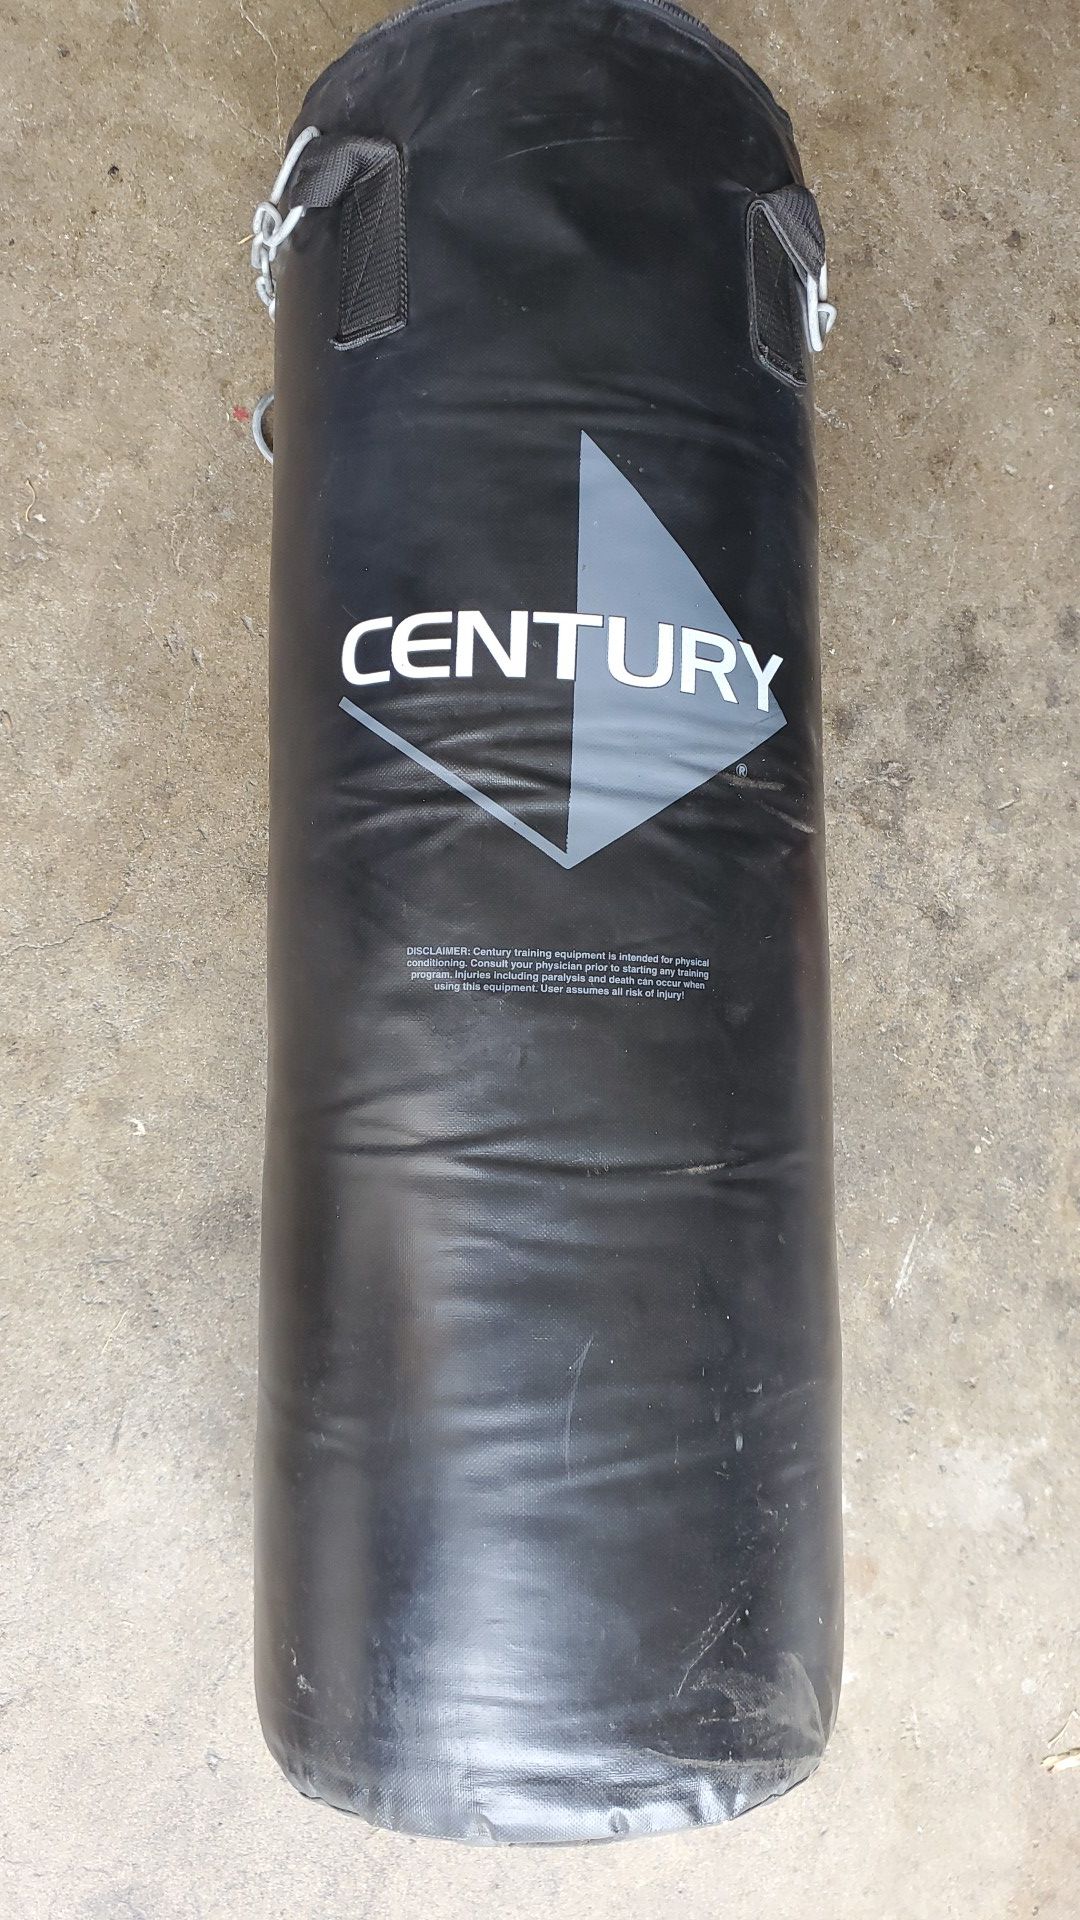 Century heavy punching bag